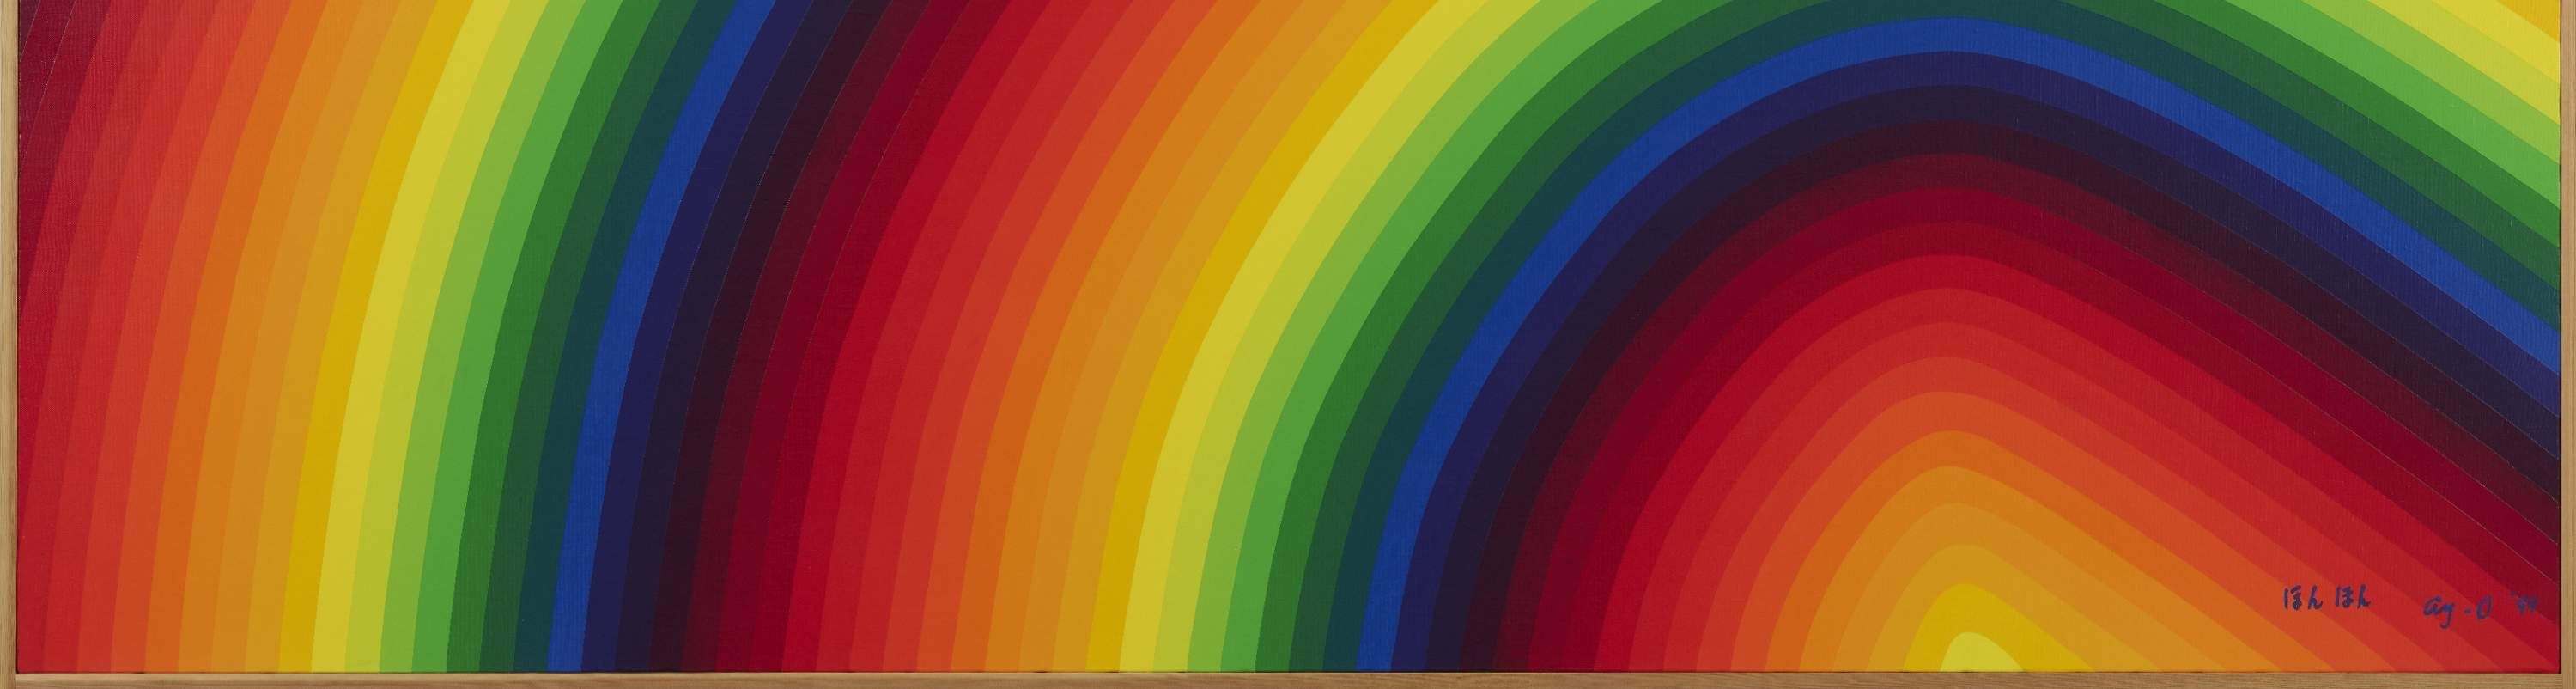 靉嘔，《虹 虹 虹》，1999年，© 靉嘔